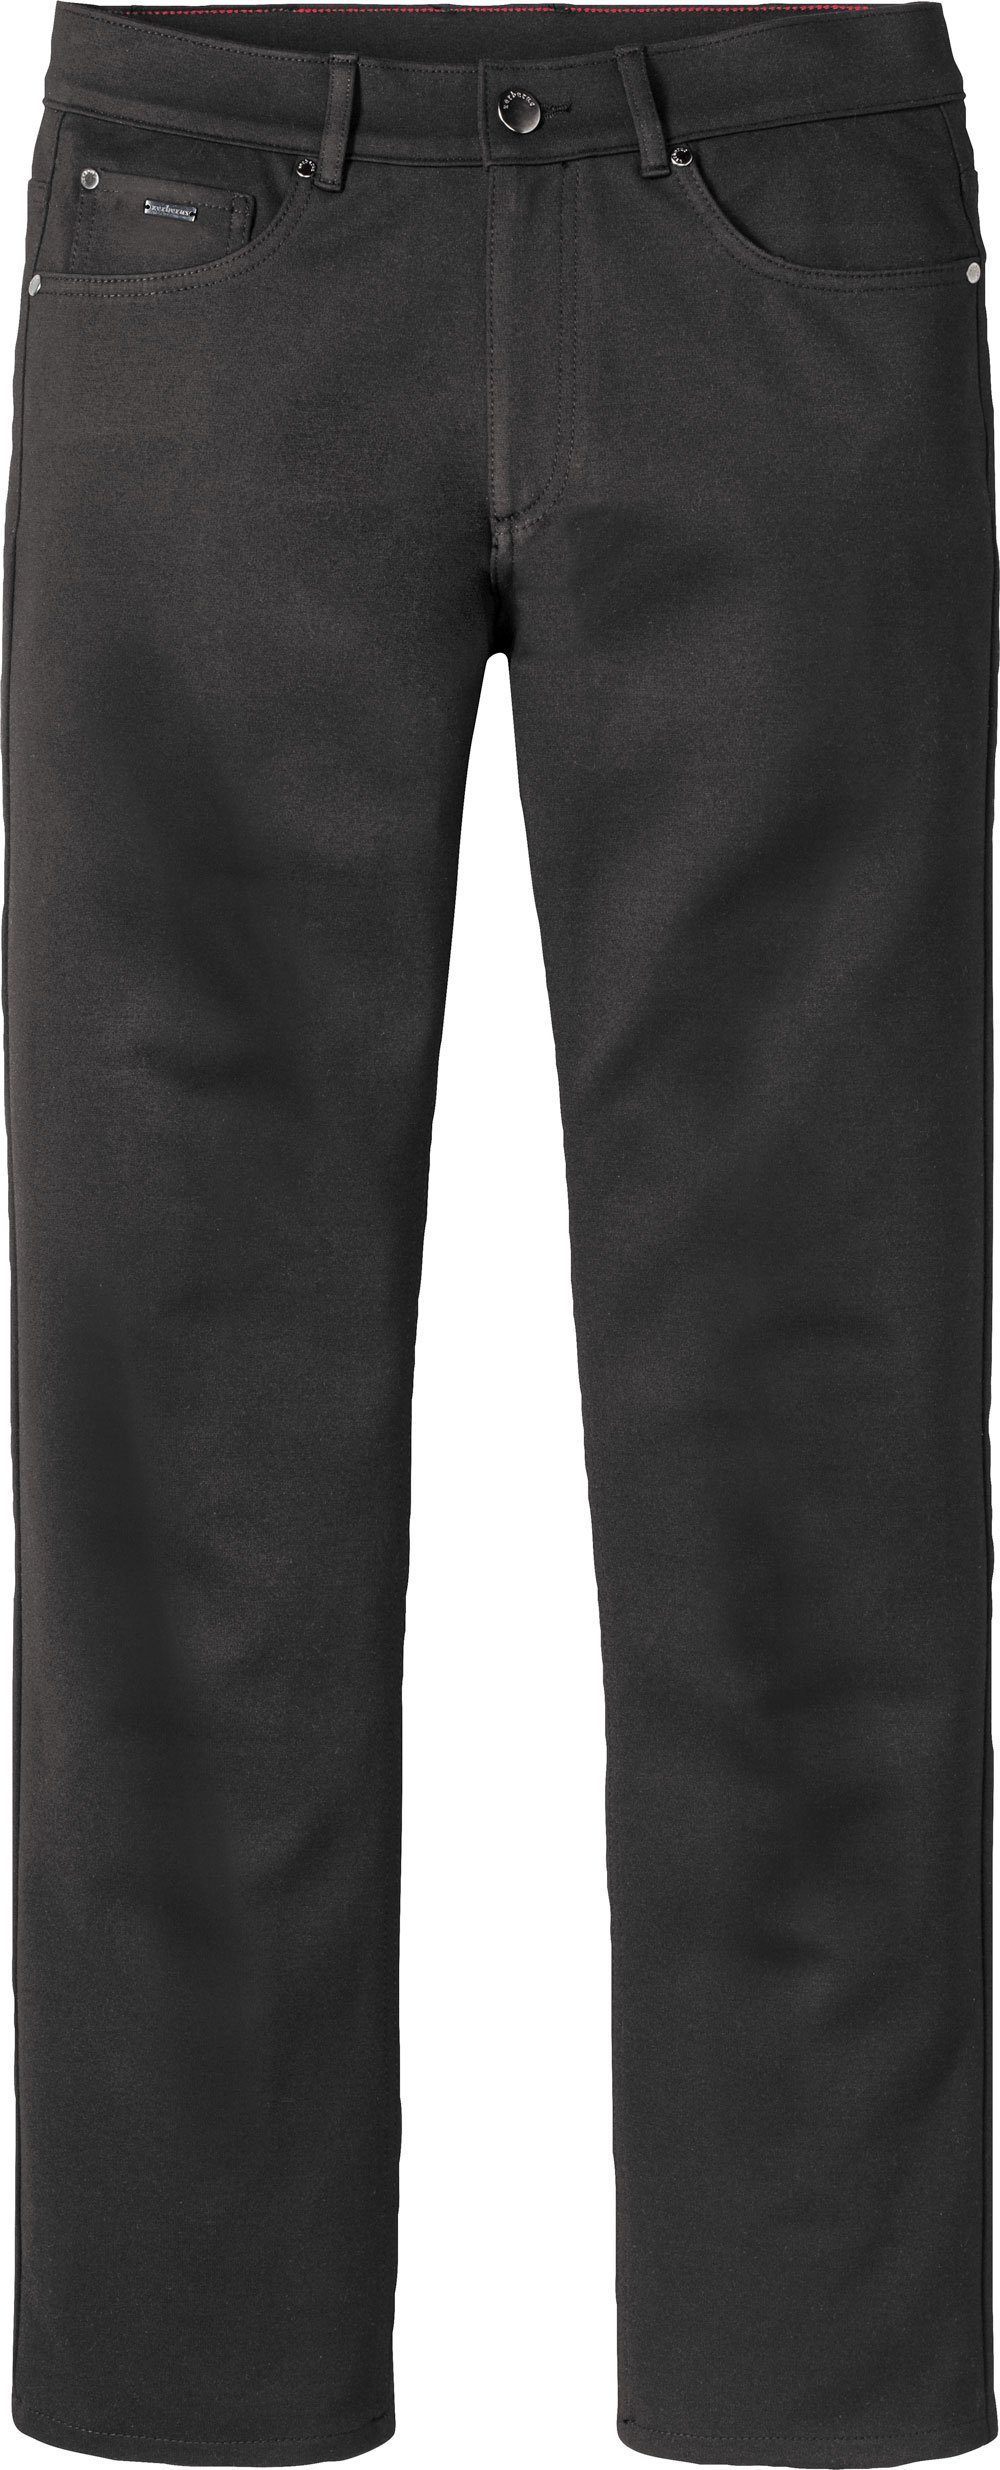 Jerseyhose schwarz 5-Pocket-Stil lässigen Passform, Zerberus im perfekte